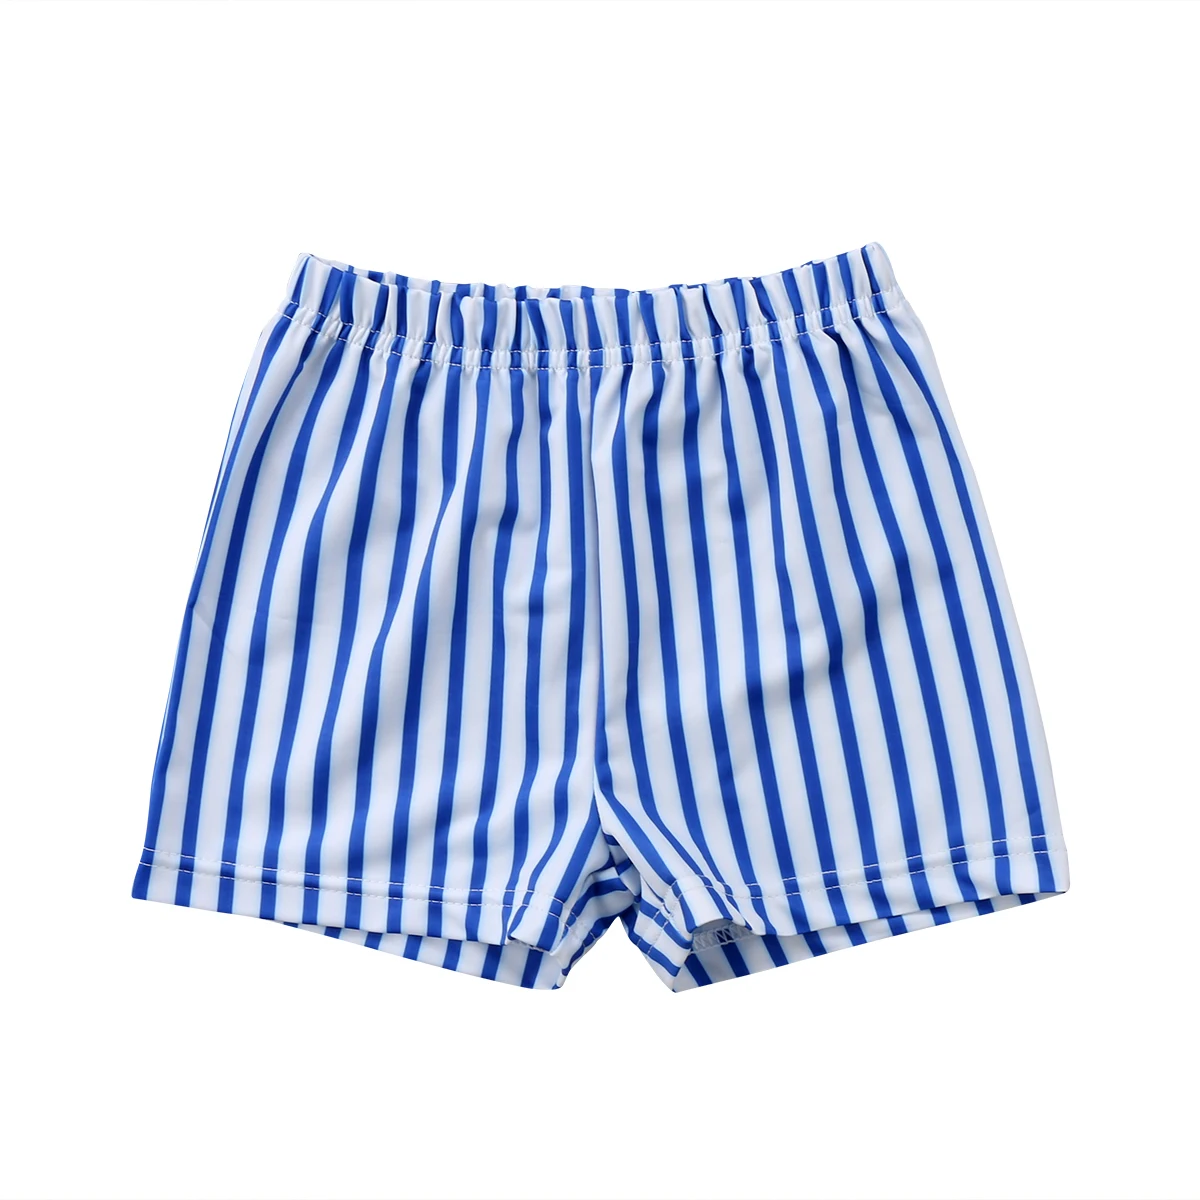 Для Новорожденных Для маленьких мальчиков детский купальный костюм в полоску, с высокой талией шорты для купания пляжная одежда костюм для пляжа - Цвет: Синий